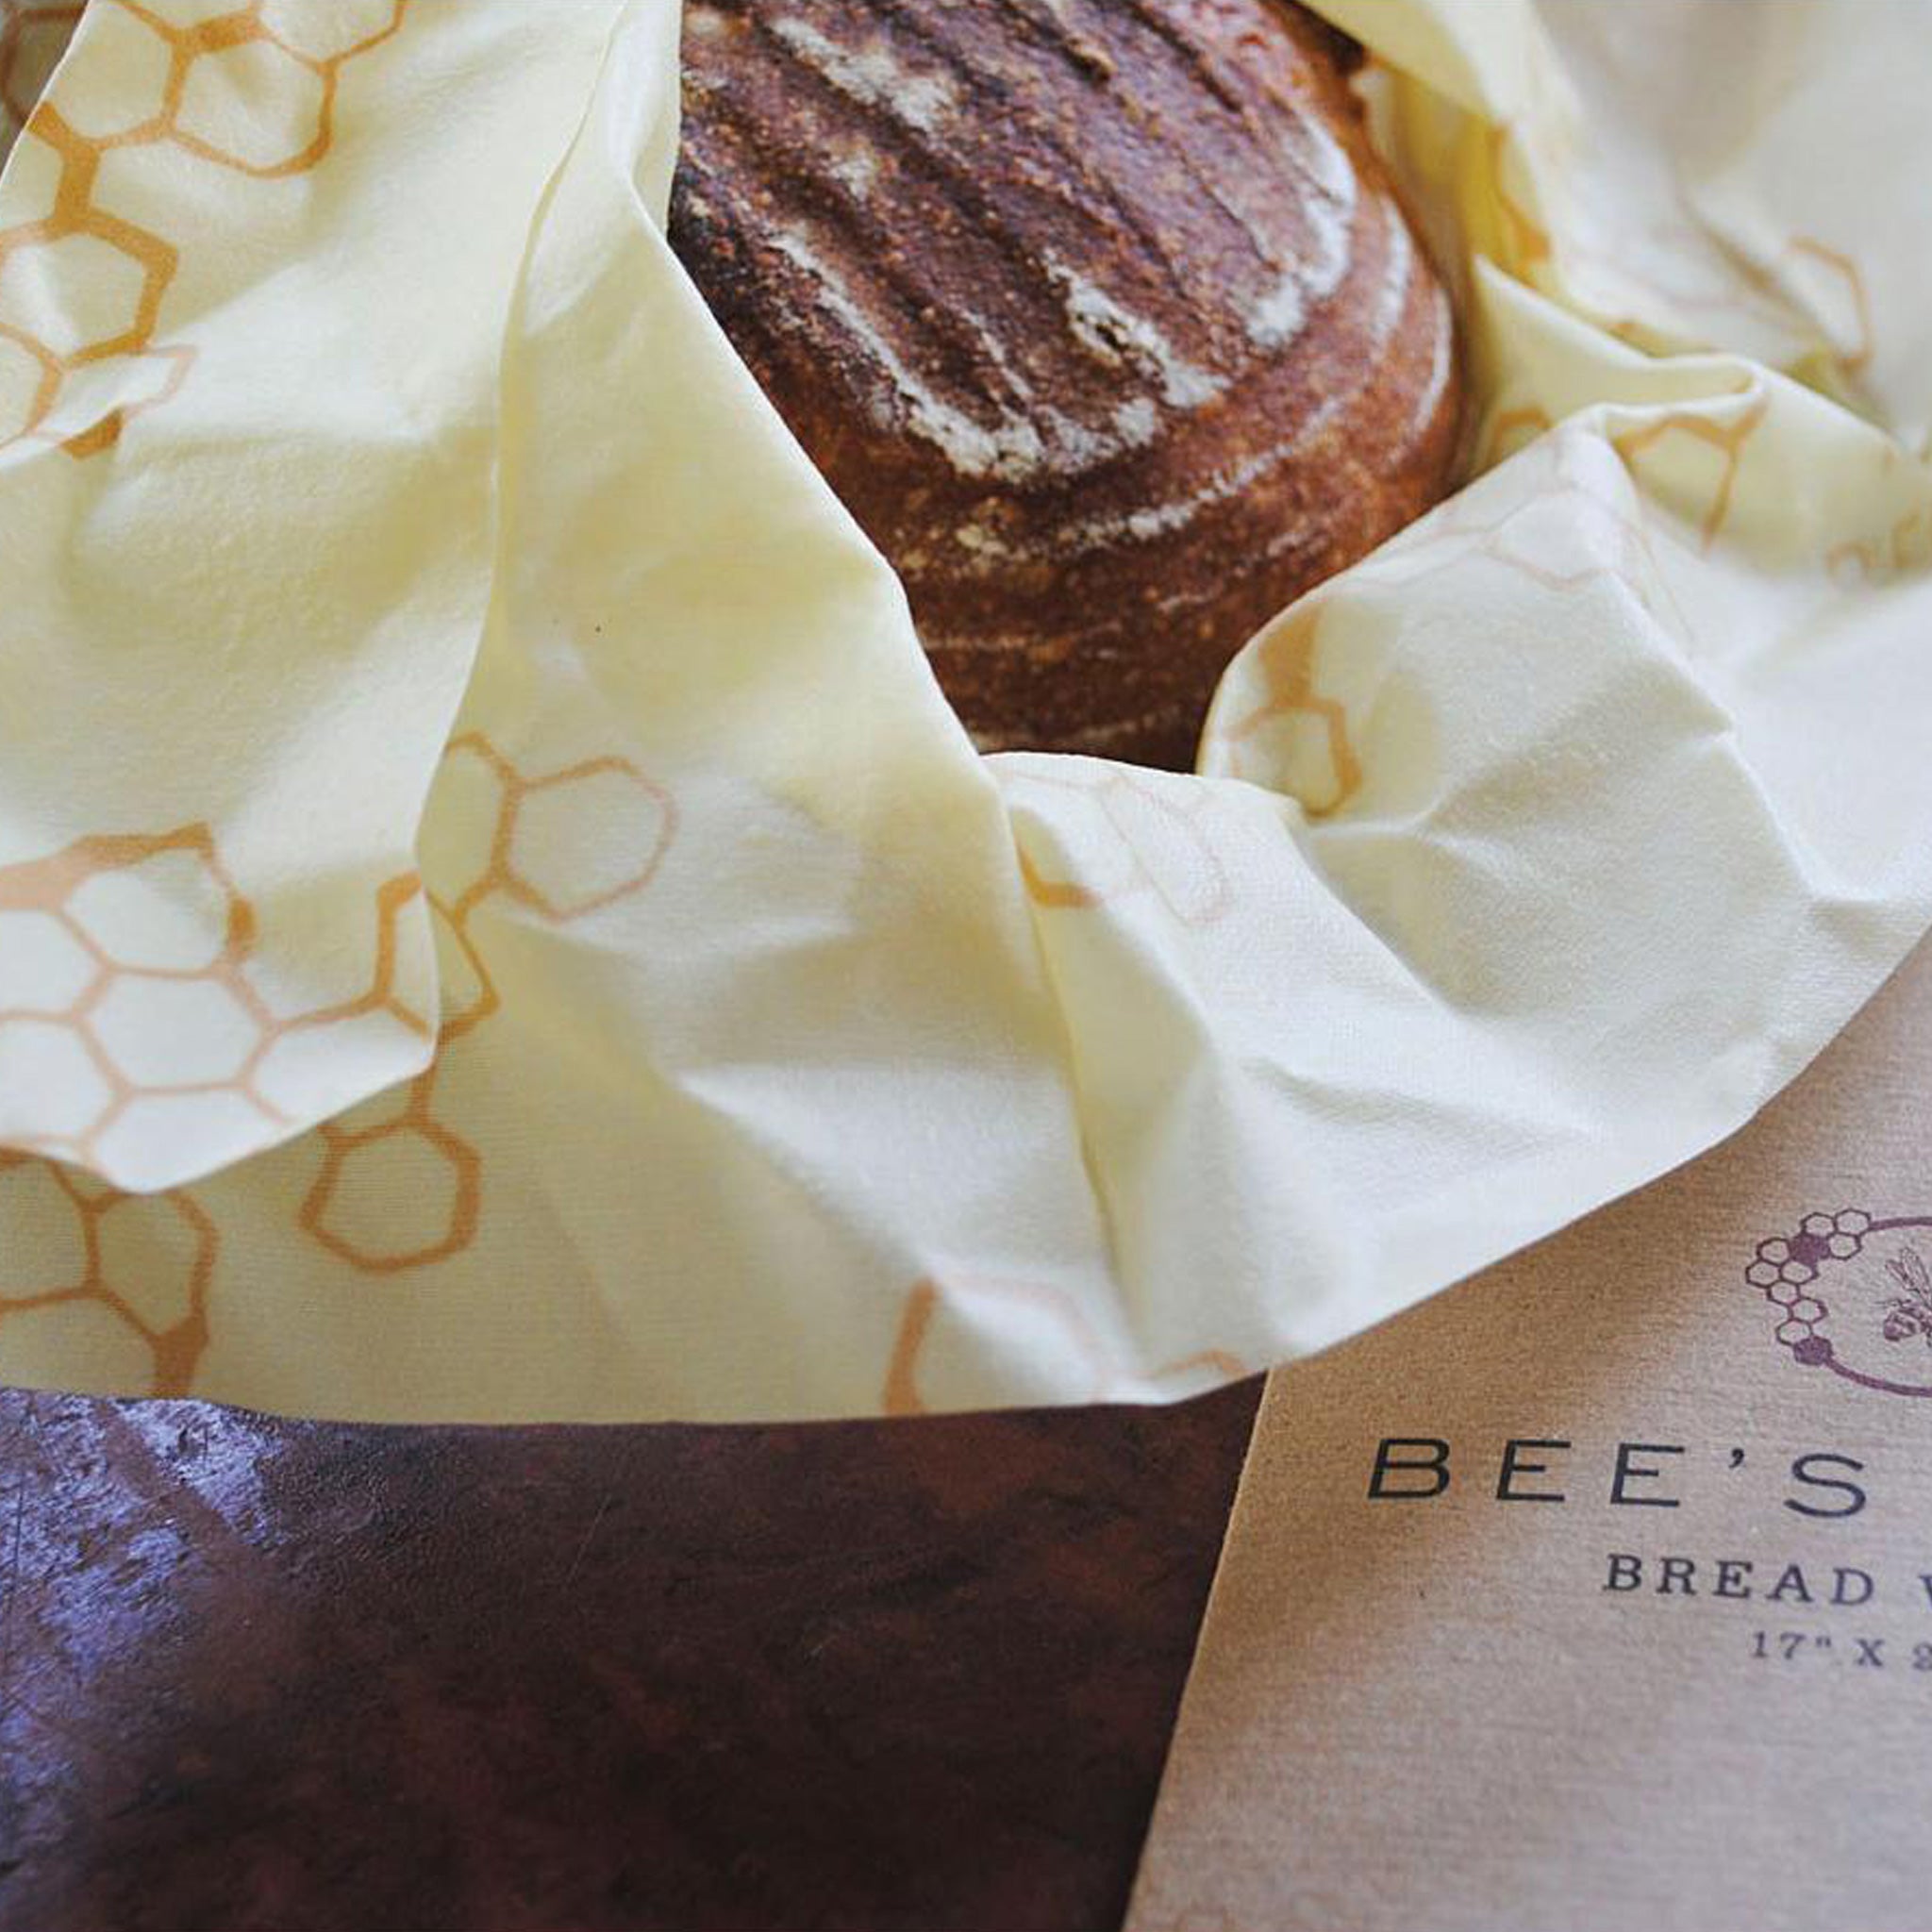 Bee's Wrap Original Print - Bread 1-Piece (17